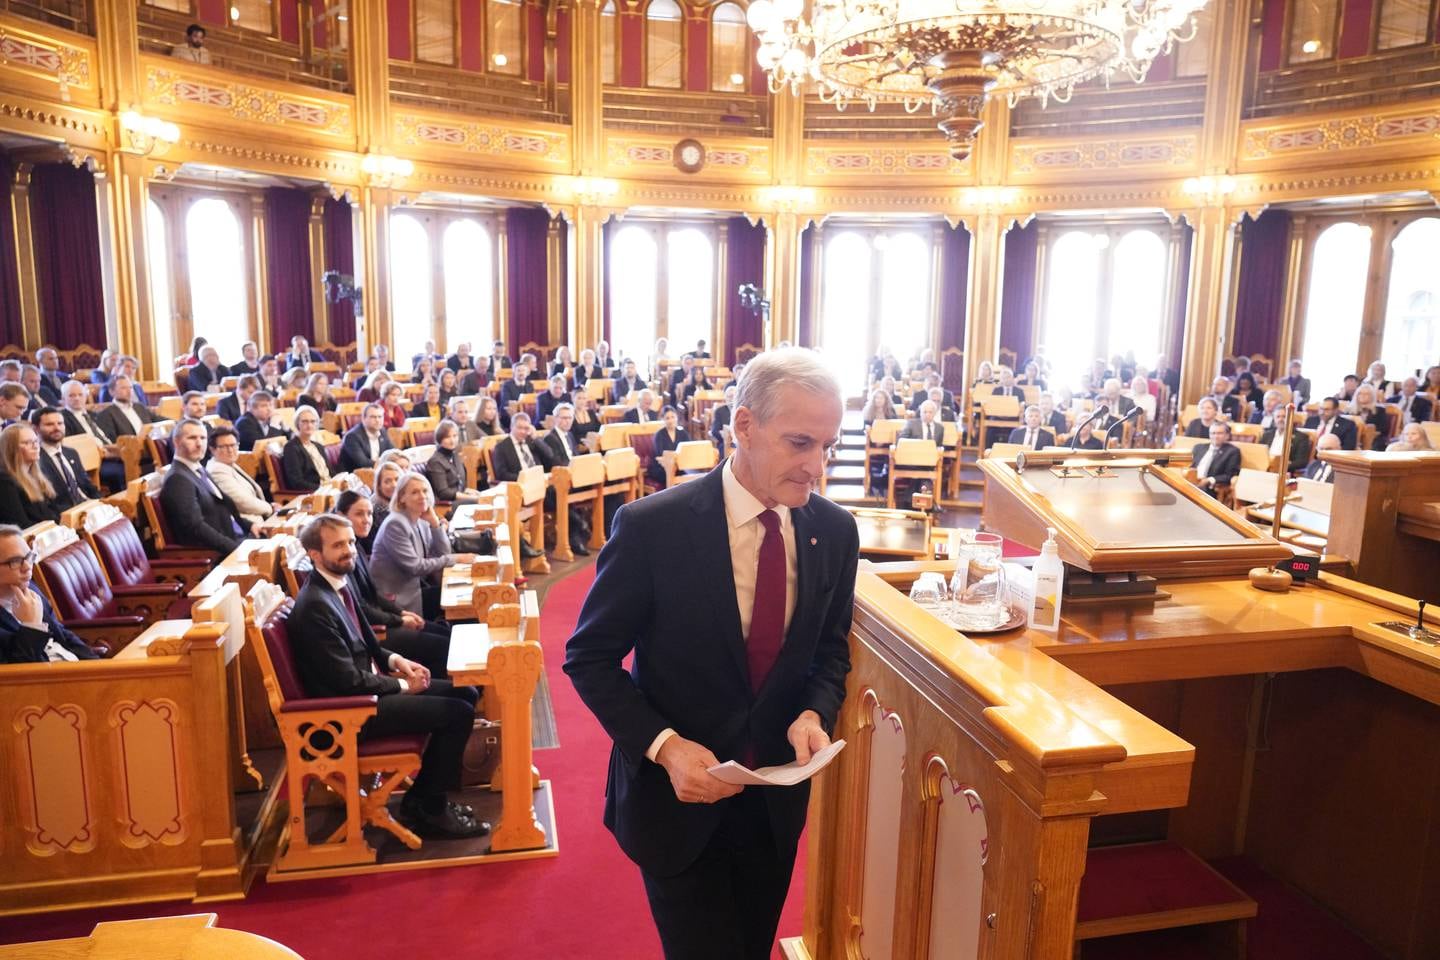 Statsminister Jonas Gahr Støre legger fram regjeringens tiltredelseserklæring i Stortinget.
Foto: Ole Berg-Rusten / NTB